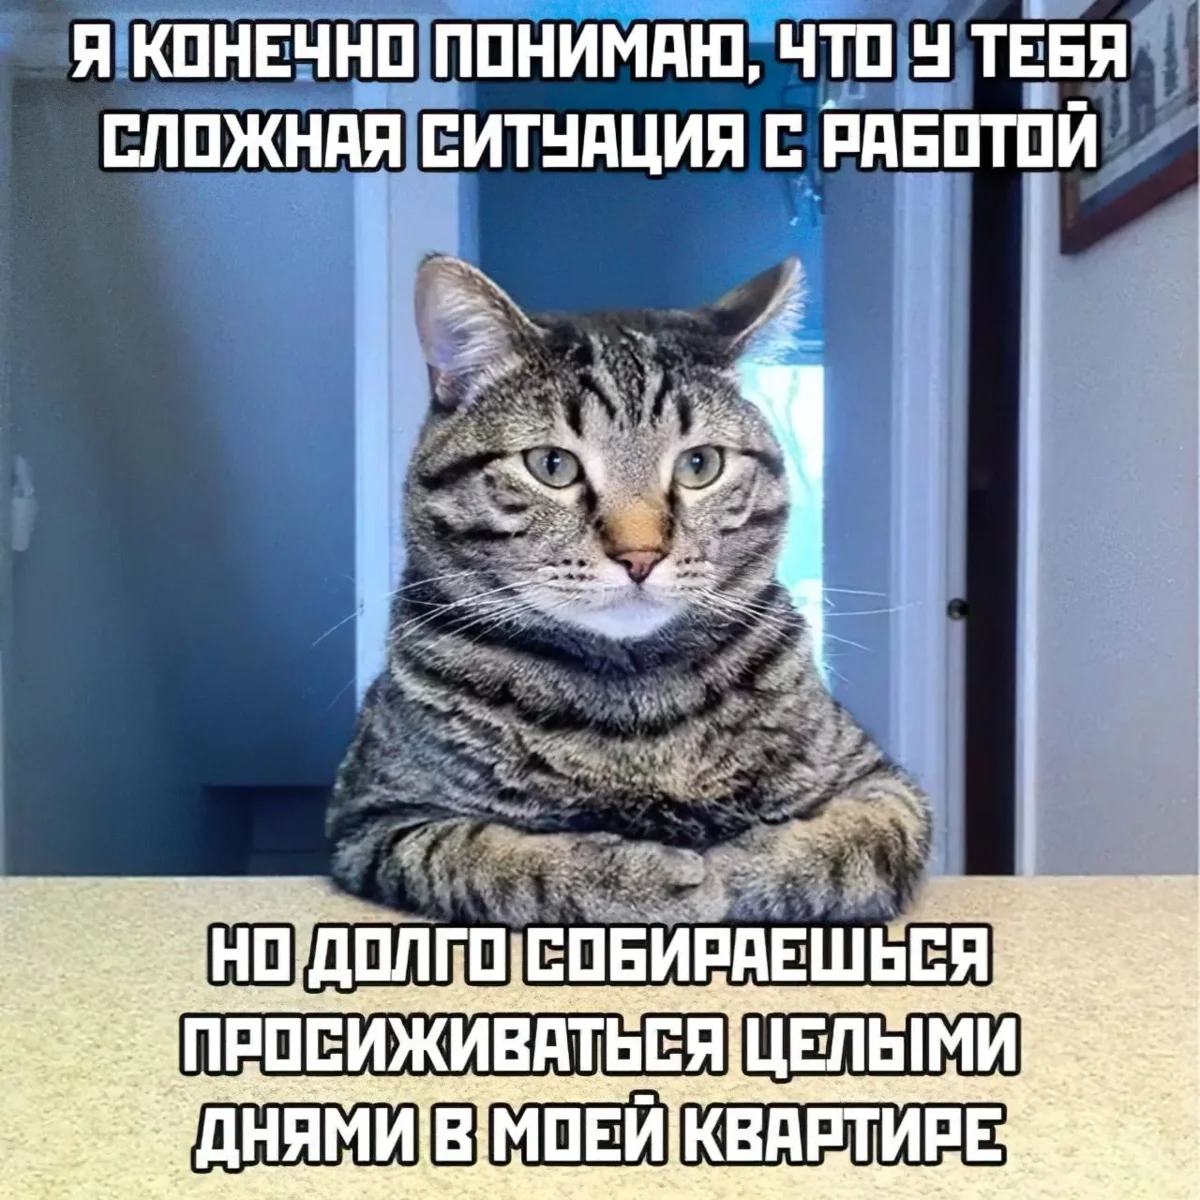 Мемы с котиками. Часть 2